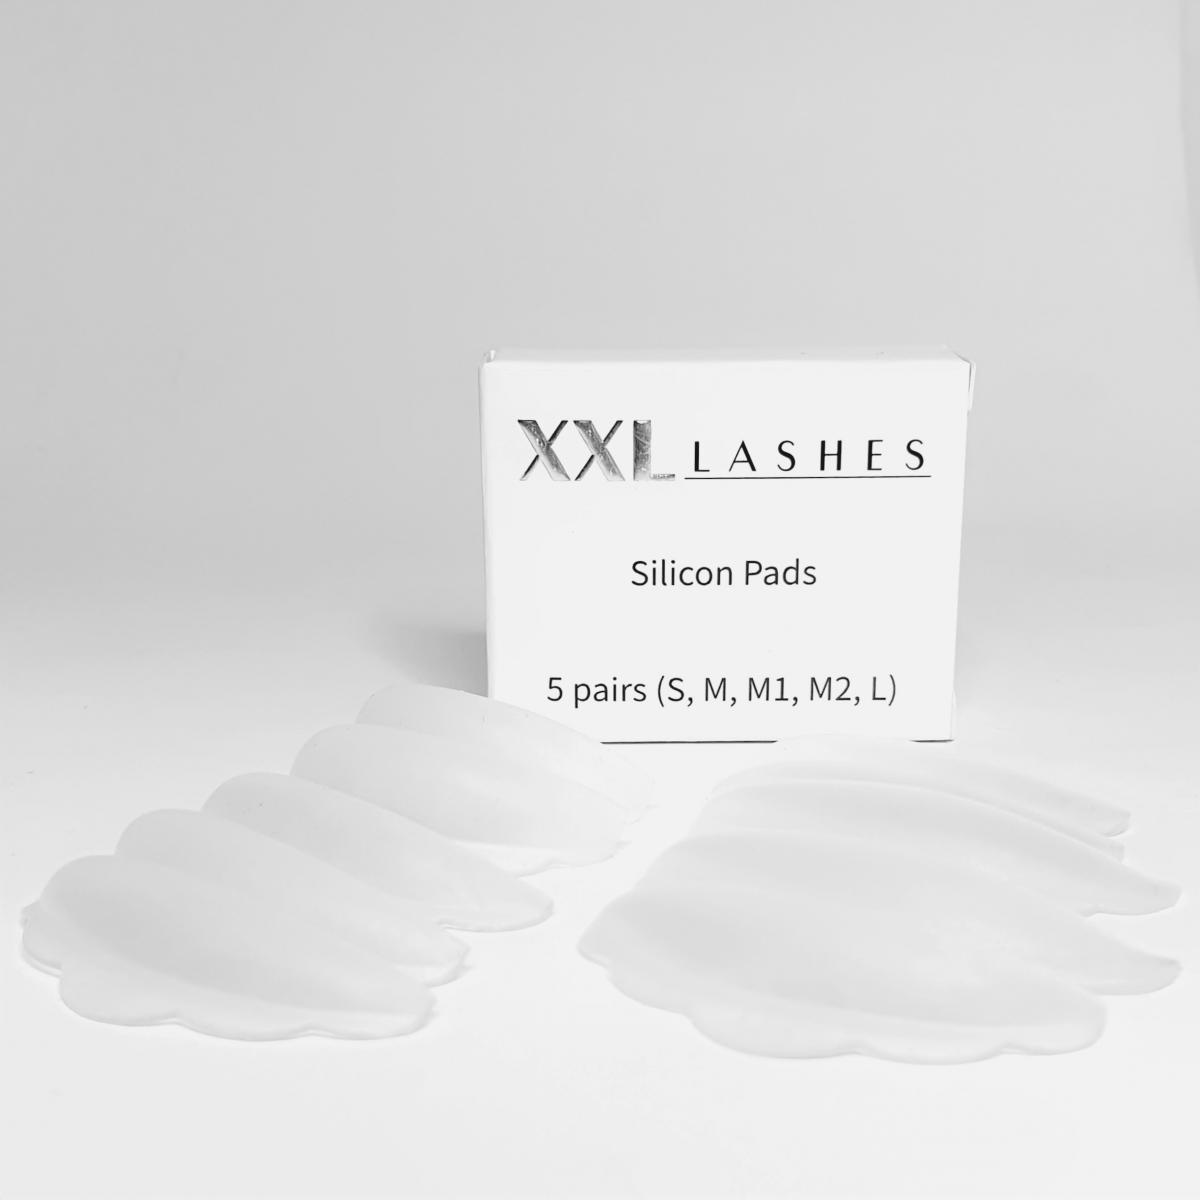 Artículos especiales: almohadillas de silicona para levantar las pestañas. 5 pares en 5 tamaños diferentes